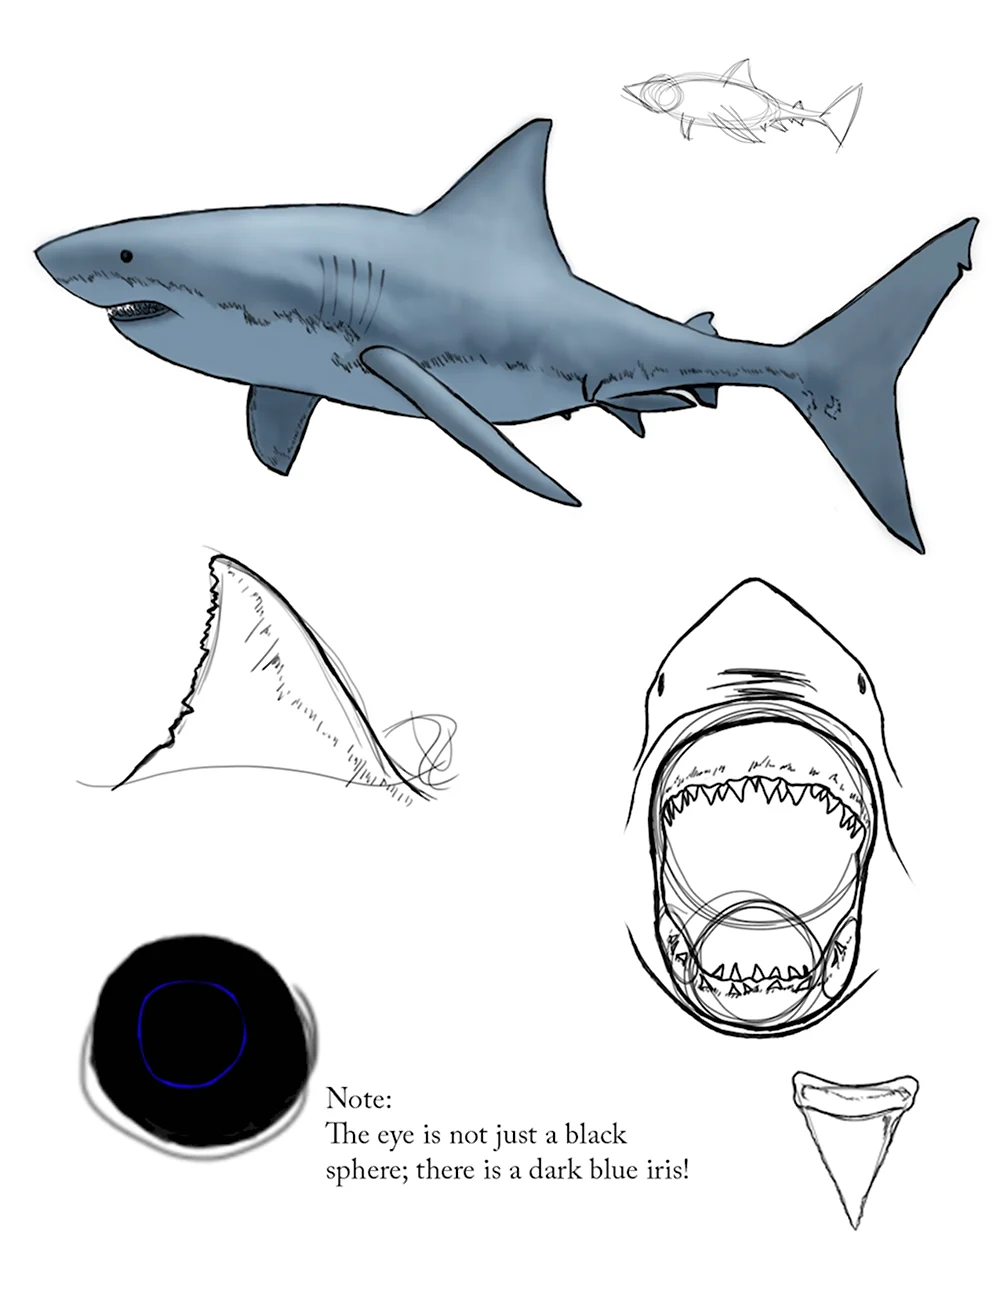 Анатомия акулы для рисования